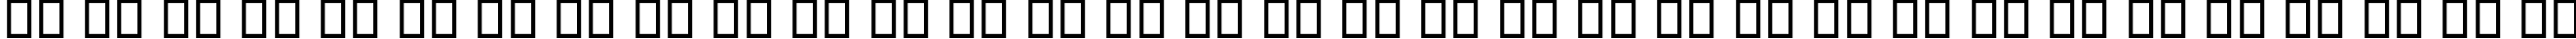 Пример написания русского алфавита шрифтом P22 Da Vinci Forward